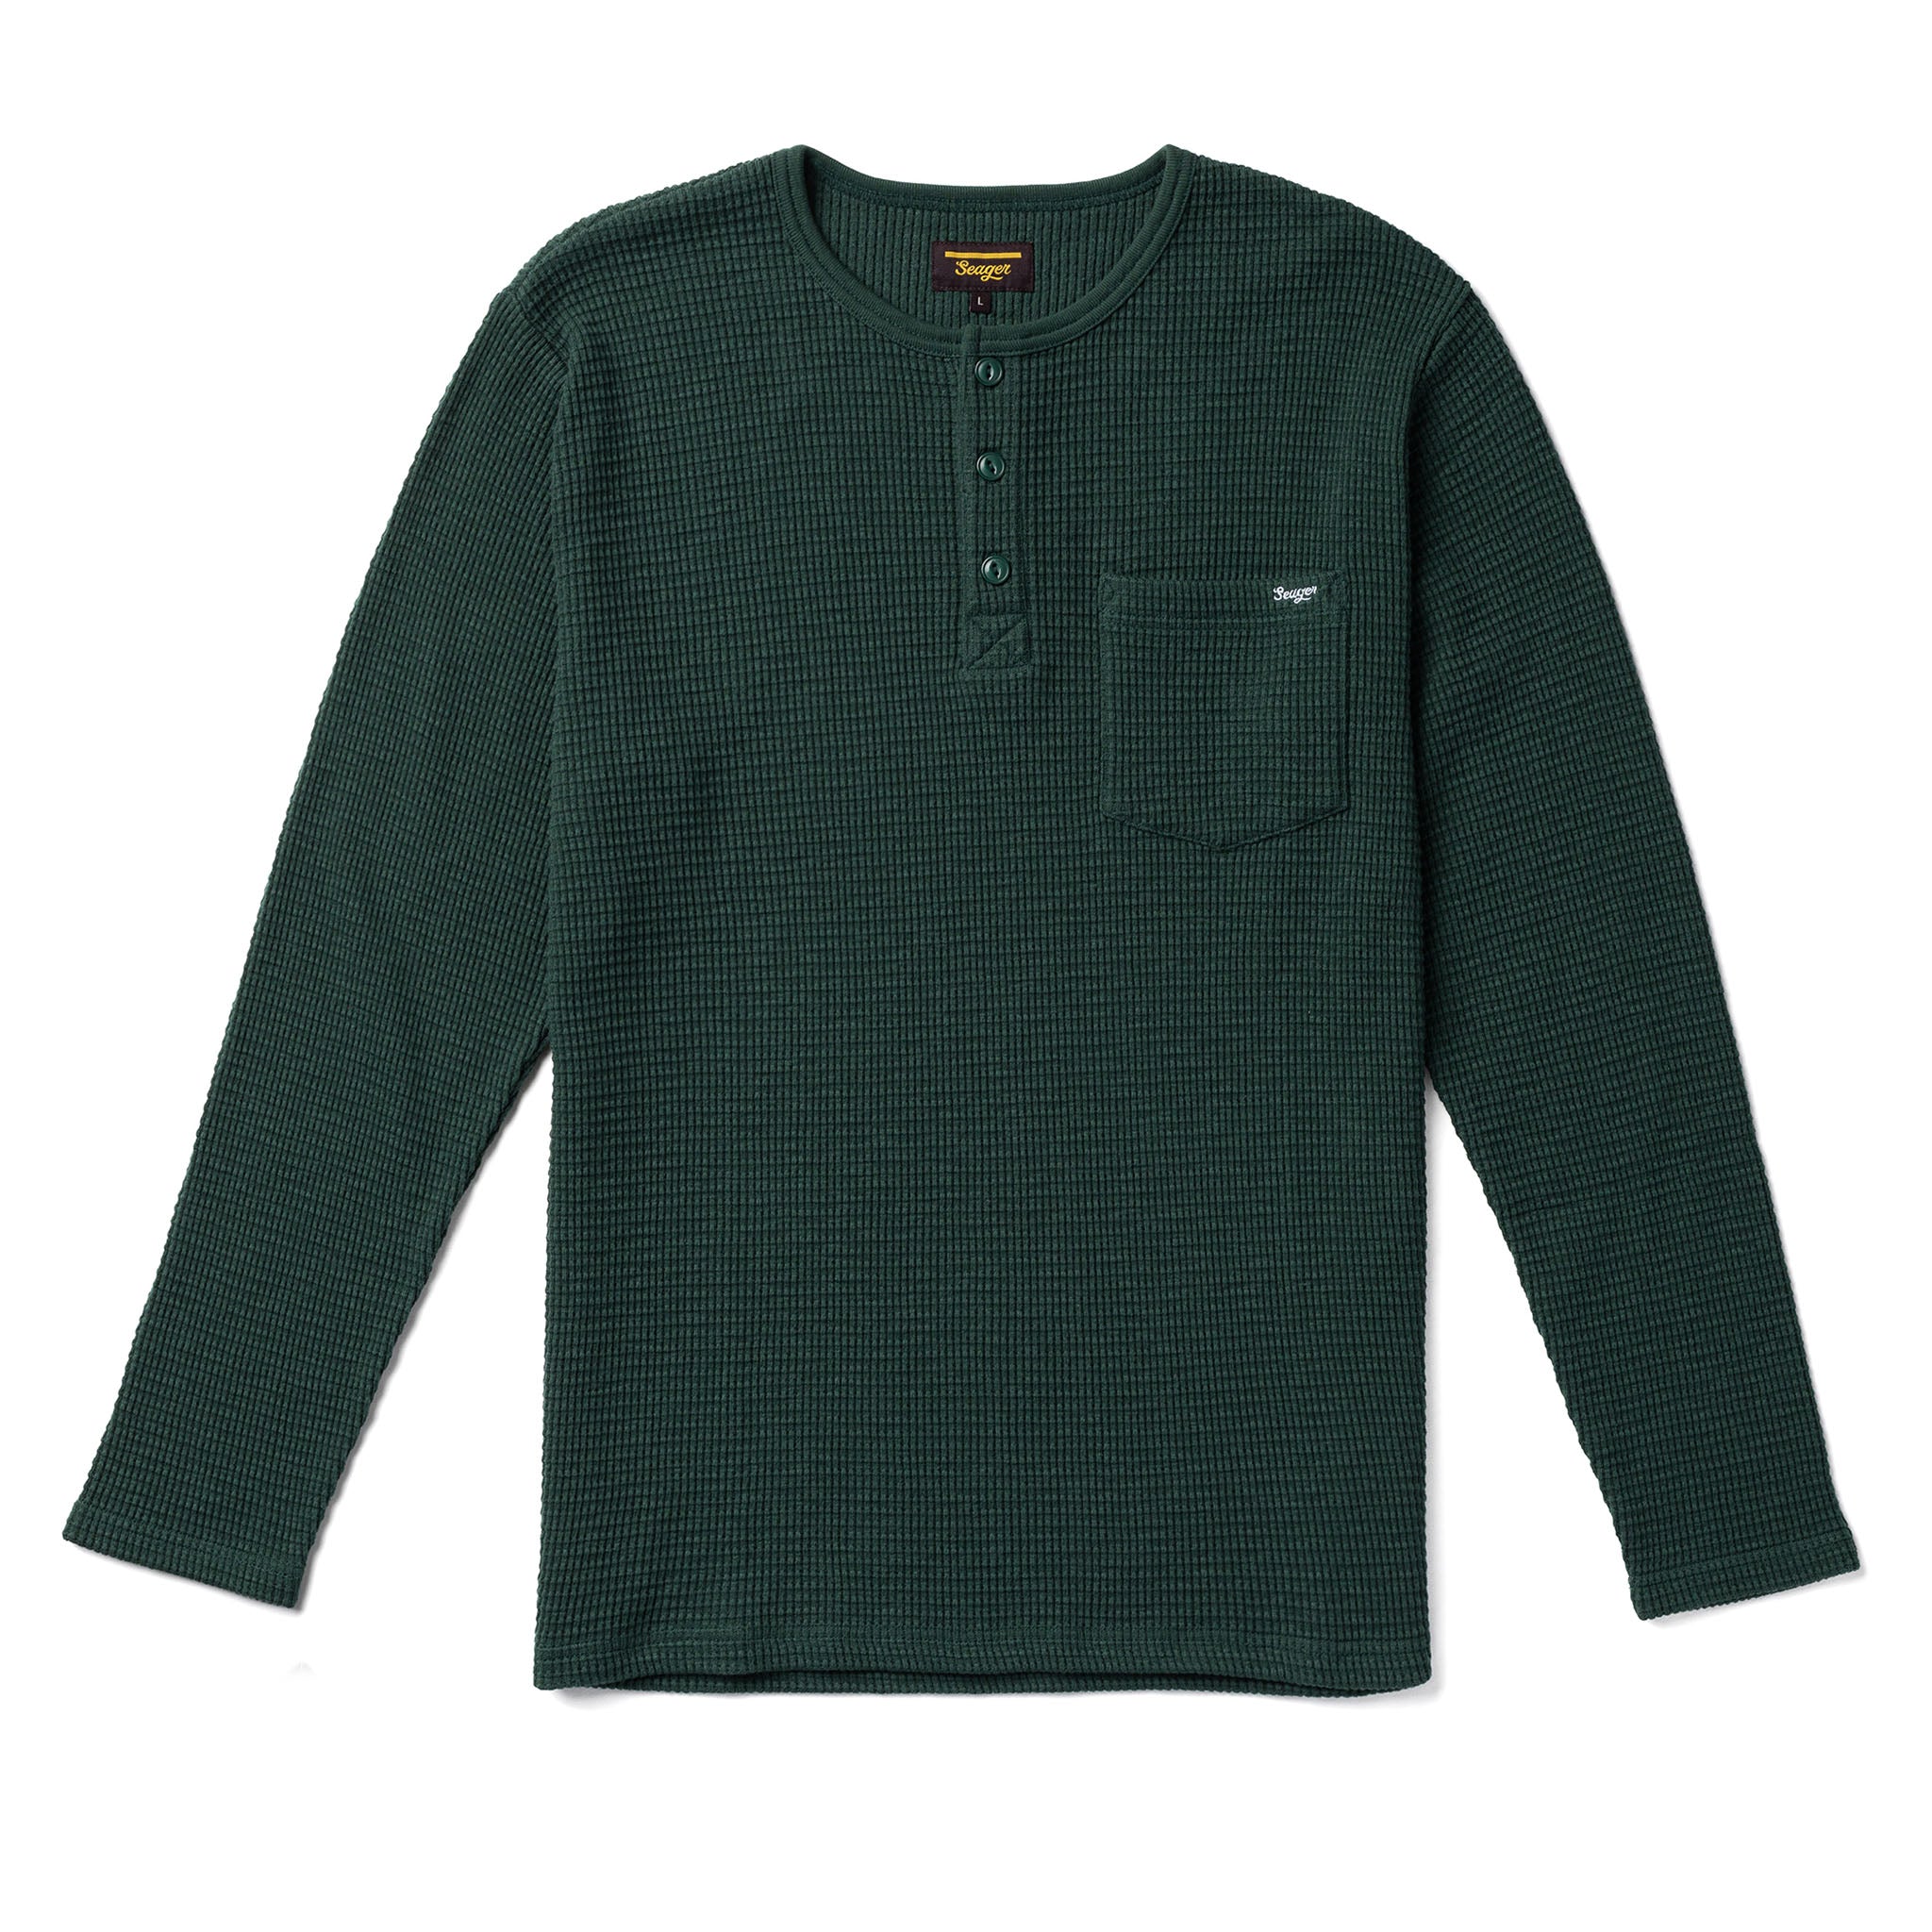 Sierra Henley Shirt - Green